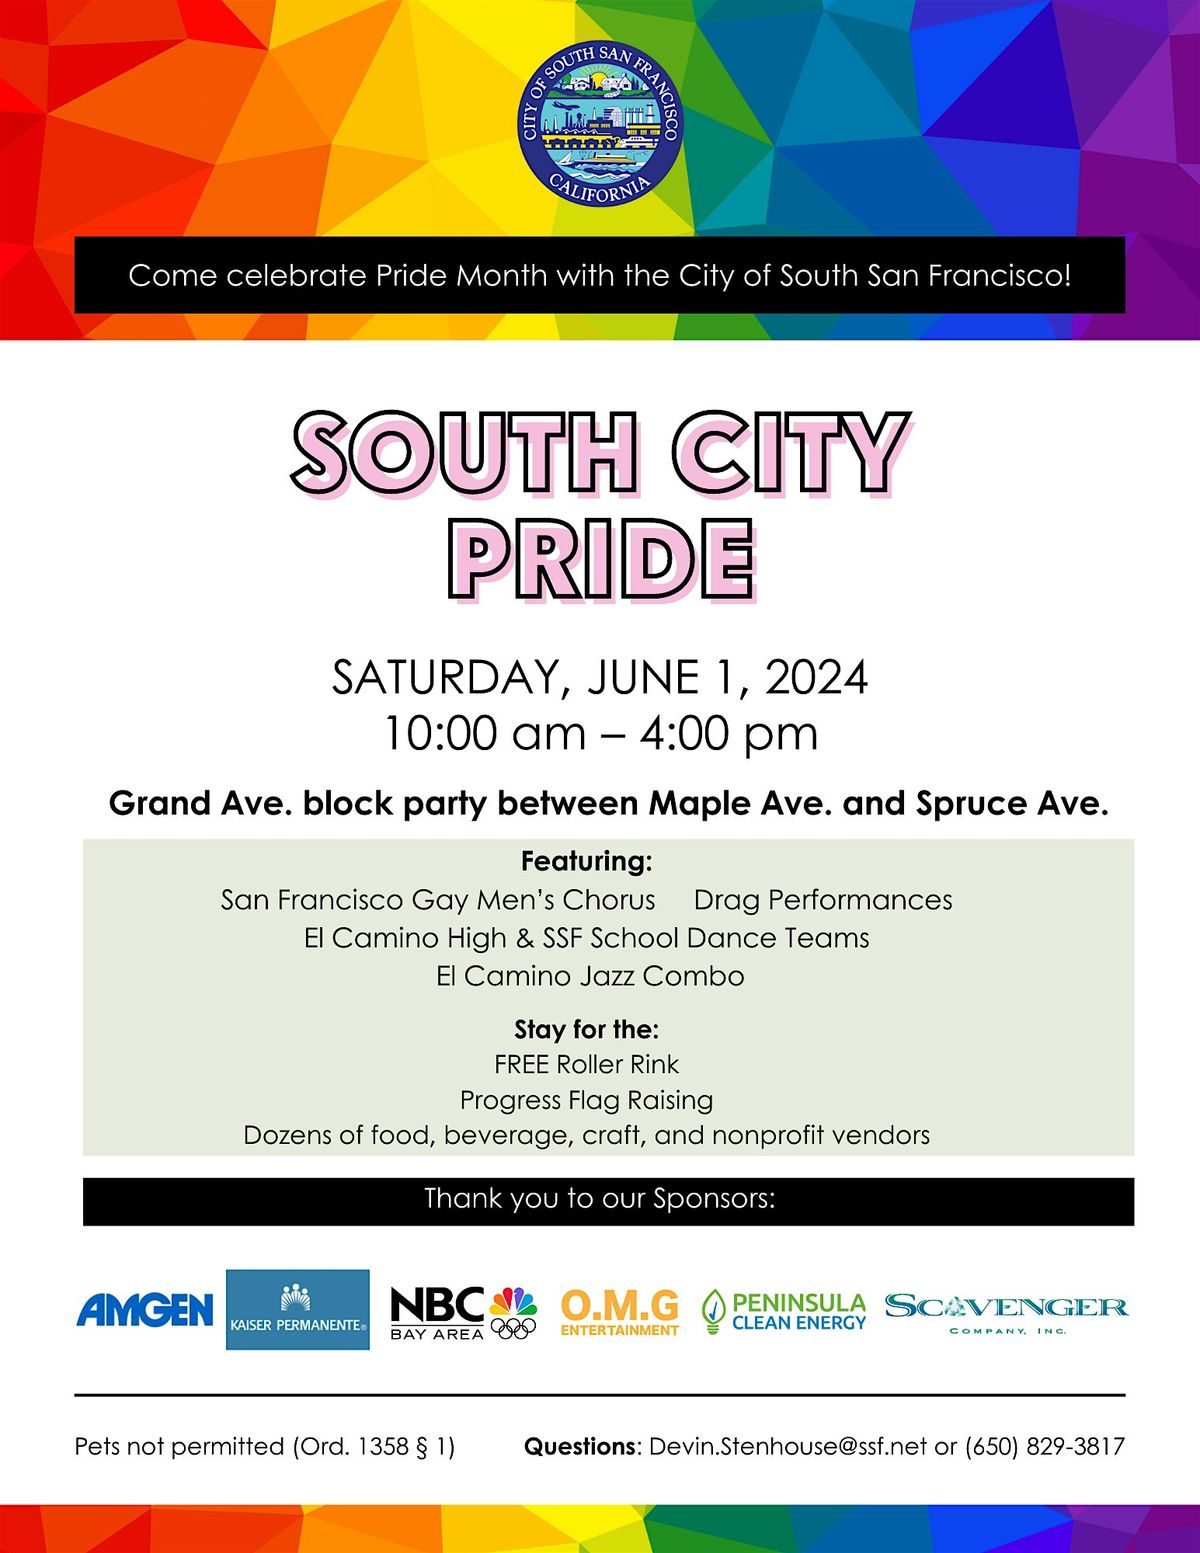 South City Pride